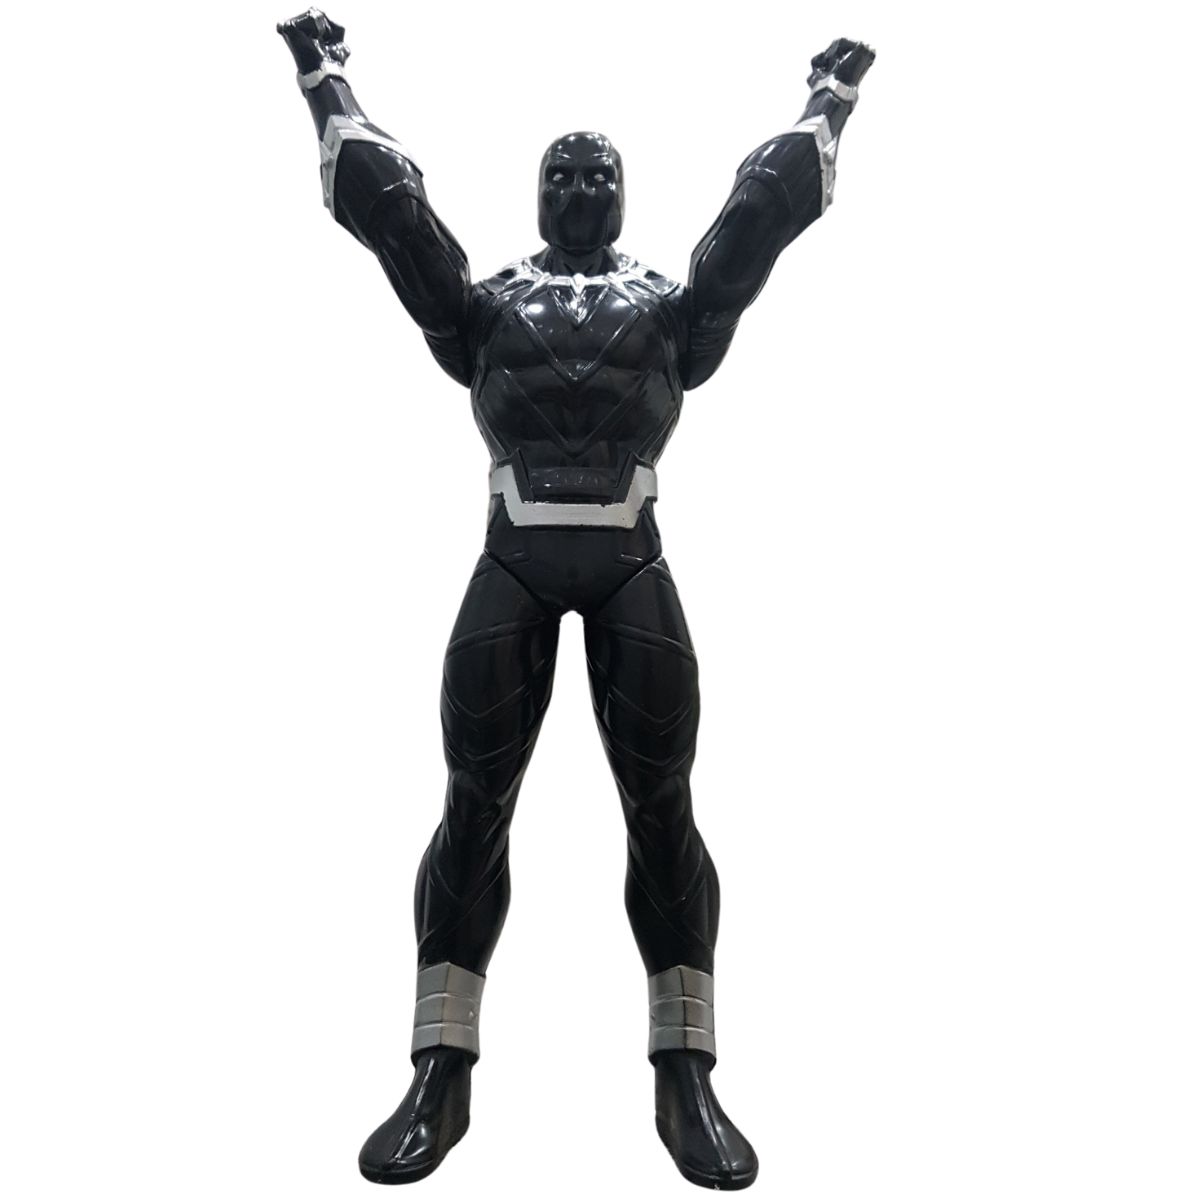 Boneco Super Herói Articulado Marvel Pantera Negra All Seasons 22cm